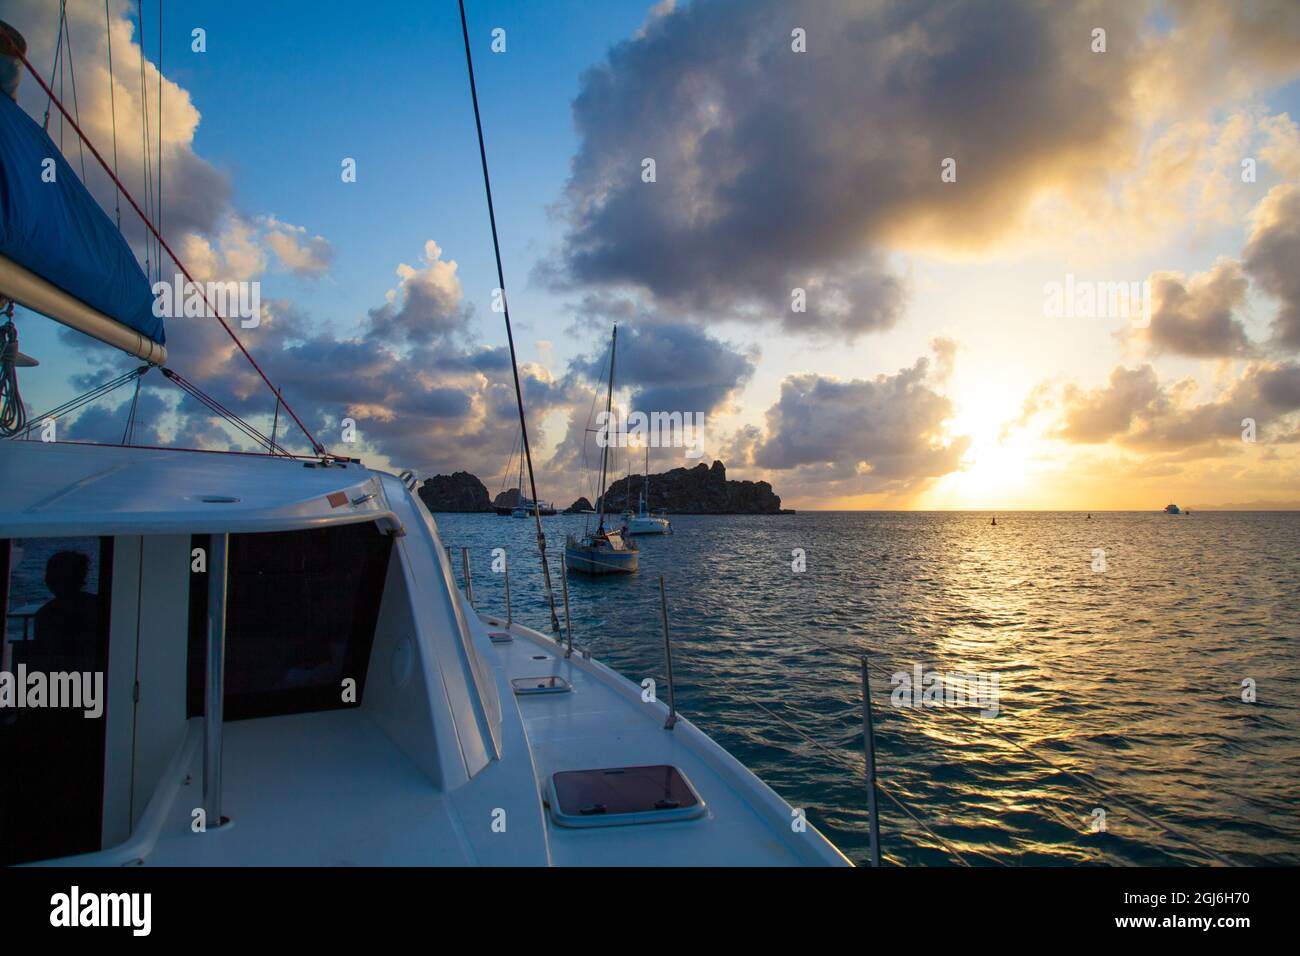 Aboard a Catamaran in Bay of Gustavia, St. Barts Island. Stock Photo